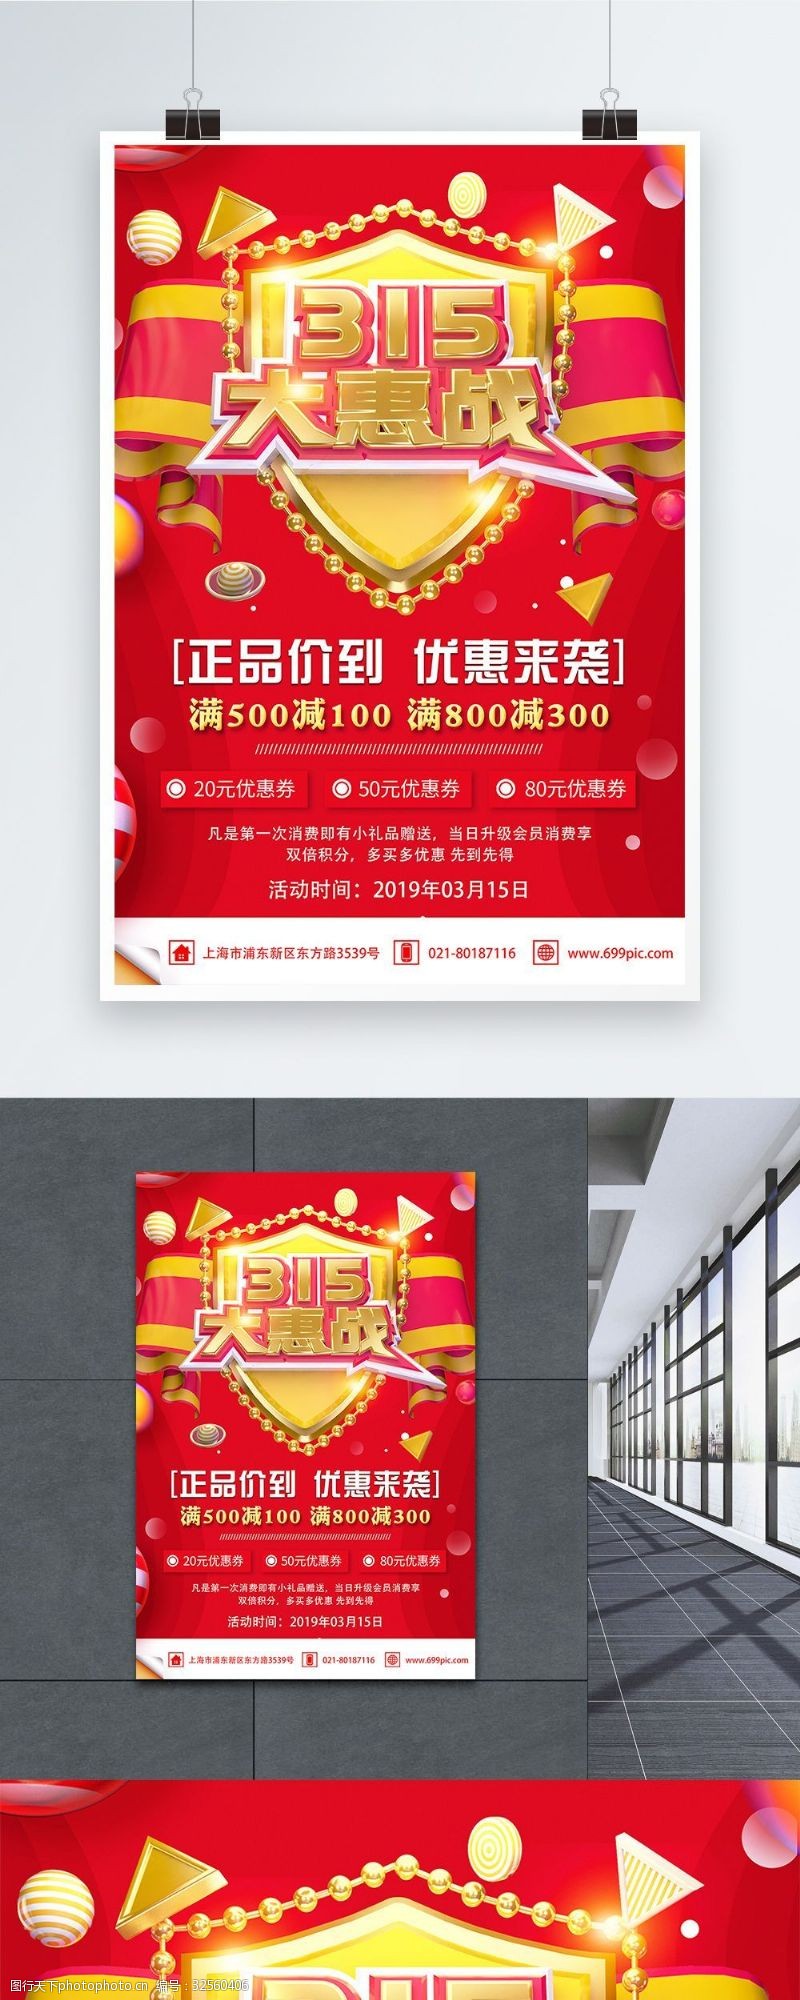 消费战报红色315大惠战节日促销活动海报